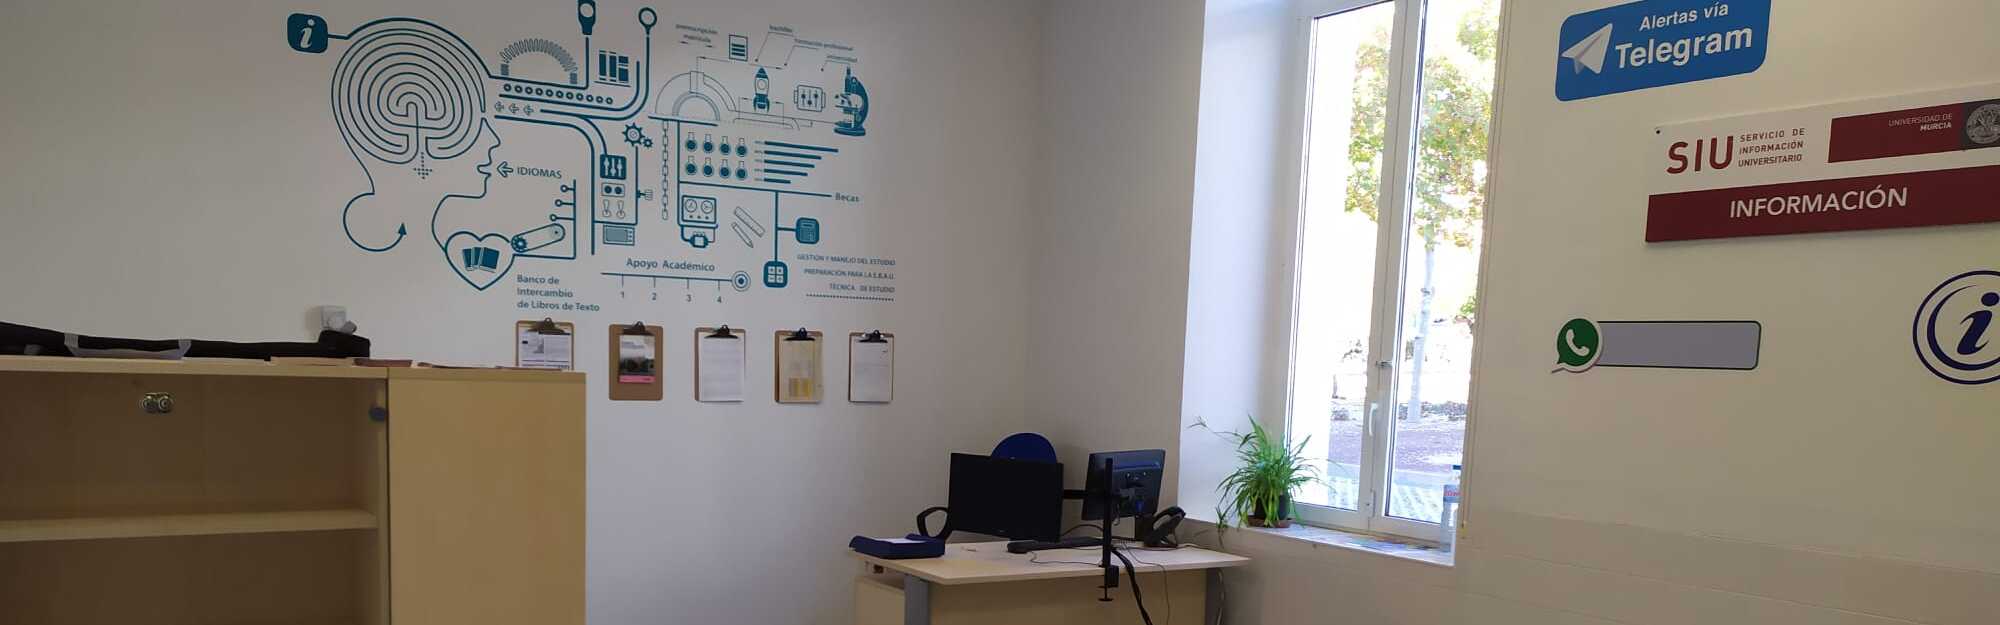 La Universidad de Murcia abre una nueva oficina del Servicio de Información Universitario en el Campus de Lorca